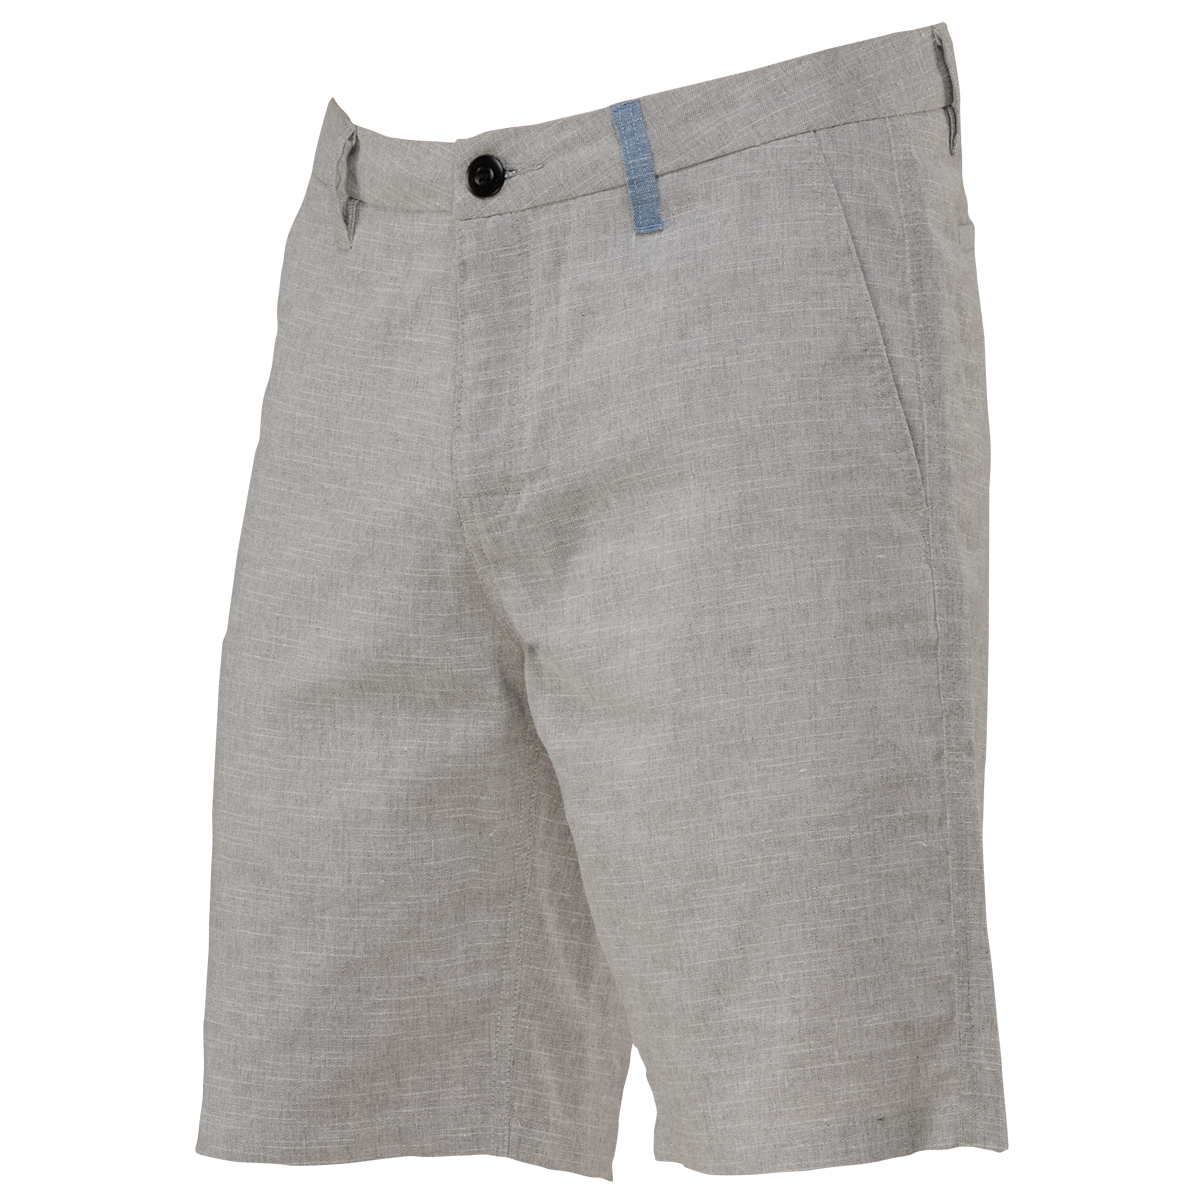 Trader Shorts - Light Gray / Blue